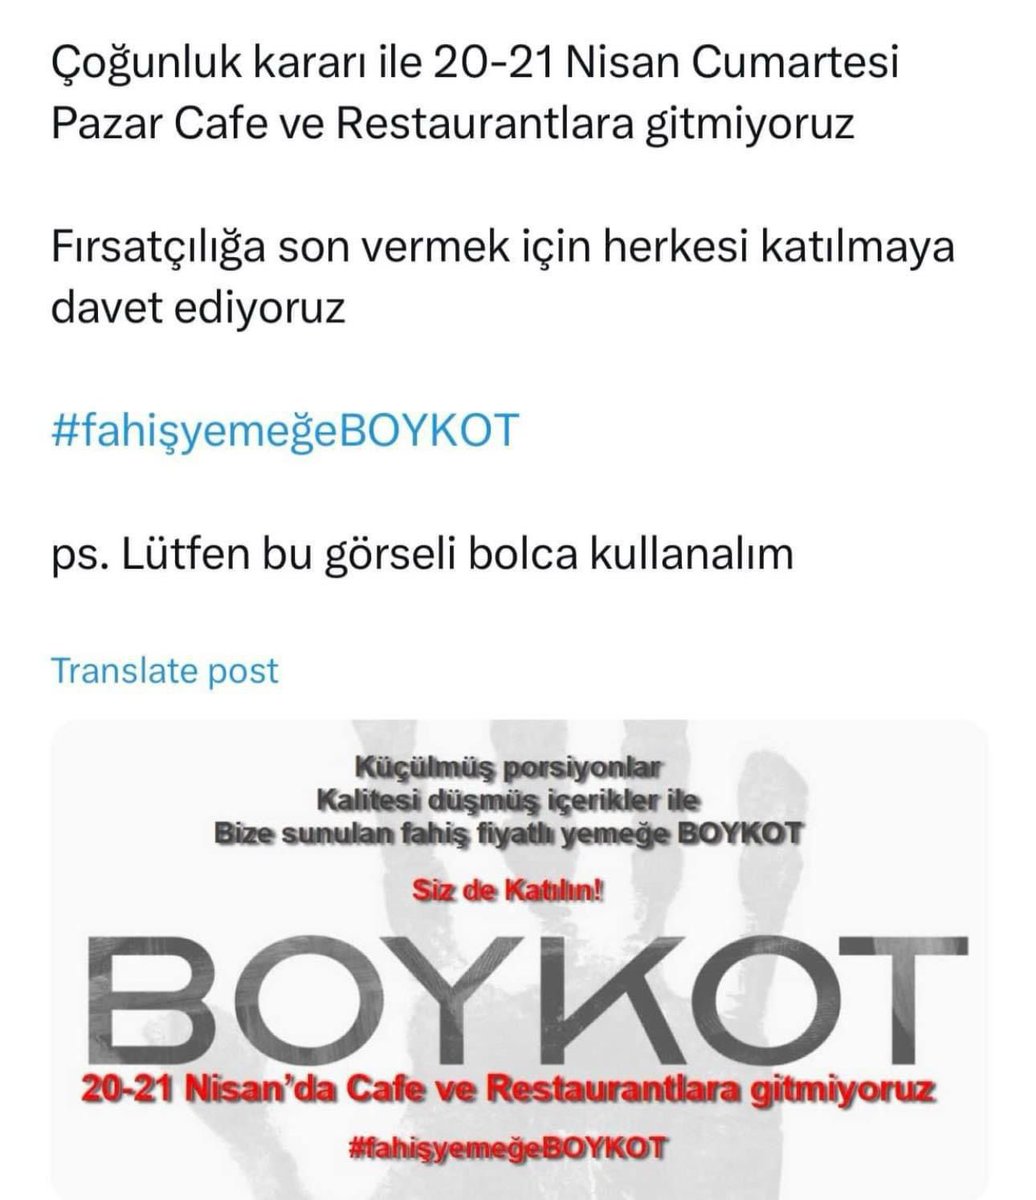 Yüksek fiyatlar nedeniyle cafe ve restoranları doğrudan sorumlu görmemekle birlikte yaşadığımız kalitesiz ve çok pahalı hayatı protesto etmek adına bu boykotu destekliyorum. #fahisyemeğeBOYKOT